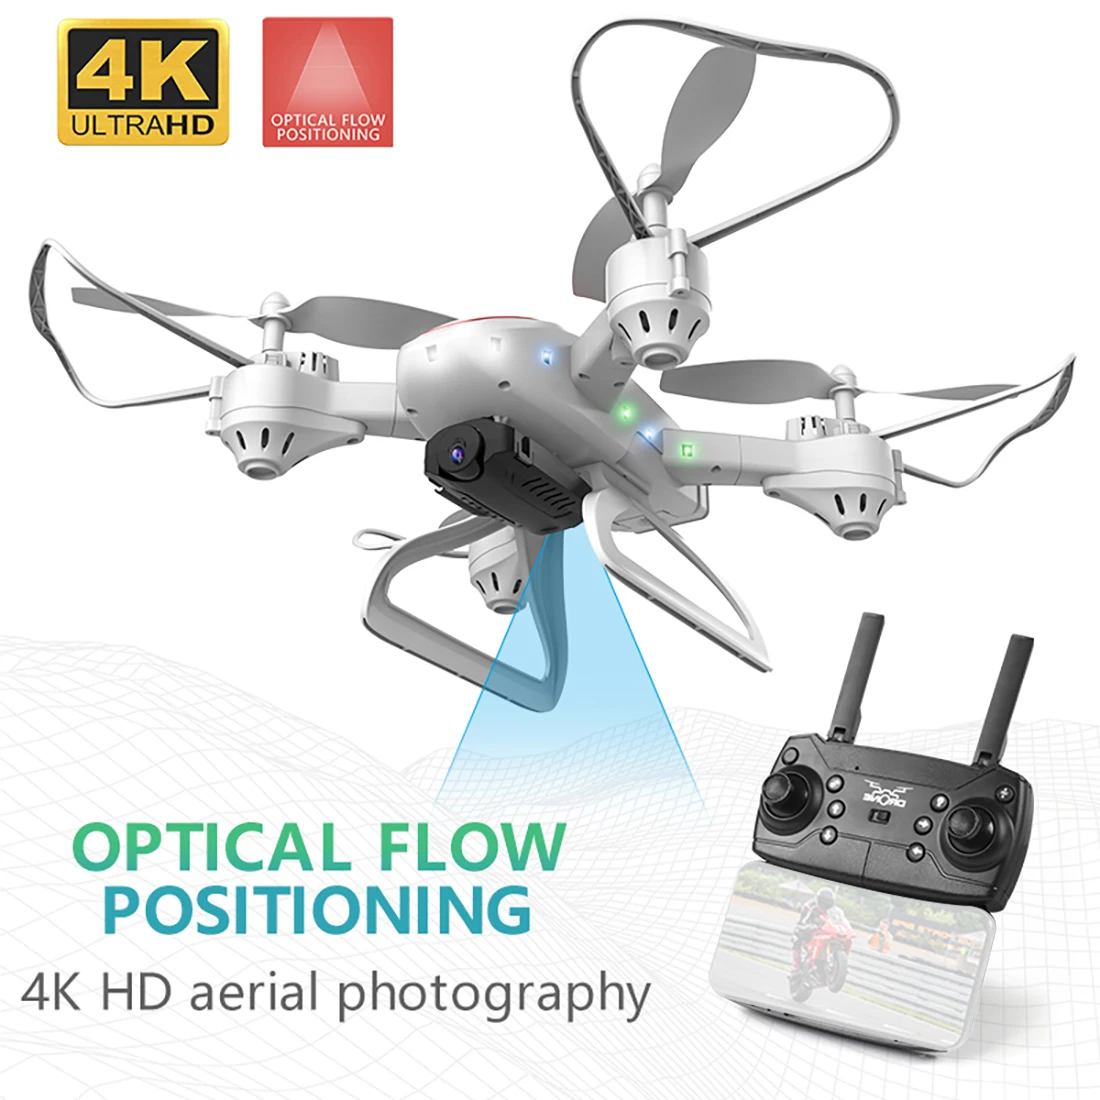 KY909 4K HD камера Дрон FPV Wi-Fi оптическое позиционирование потока RC Квадрокоптер самолет в сложенном виде Высота удерживает длительный срок службы батареи детские игрушки